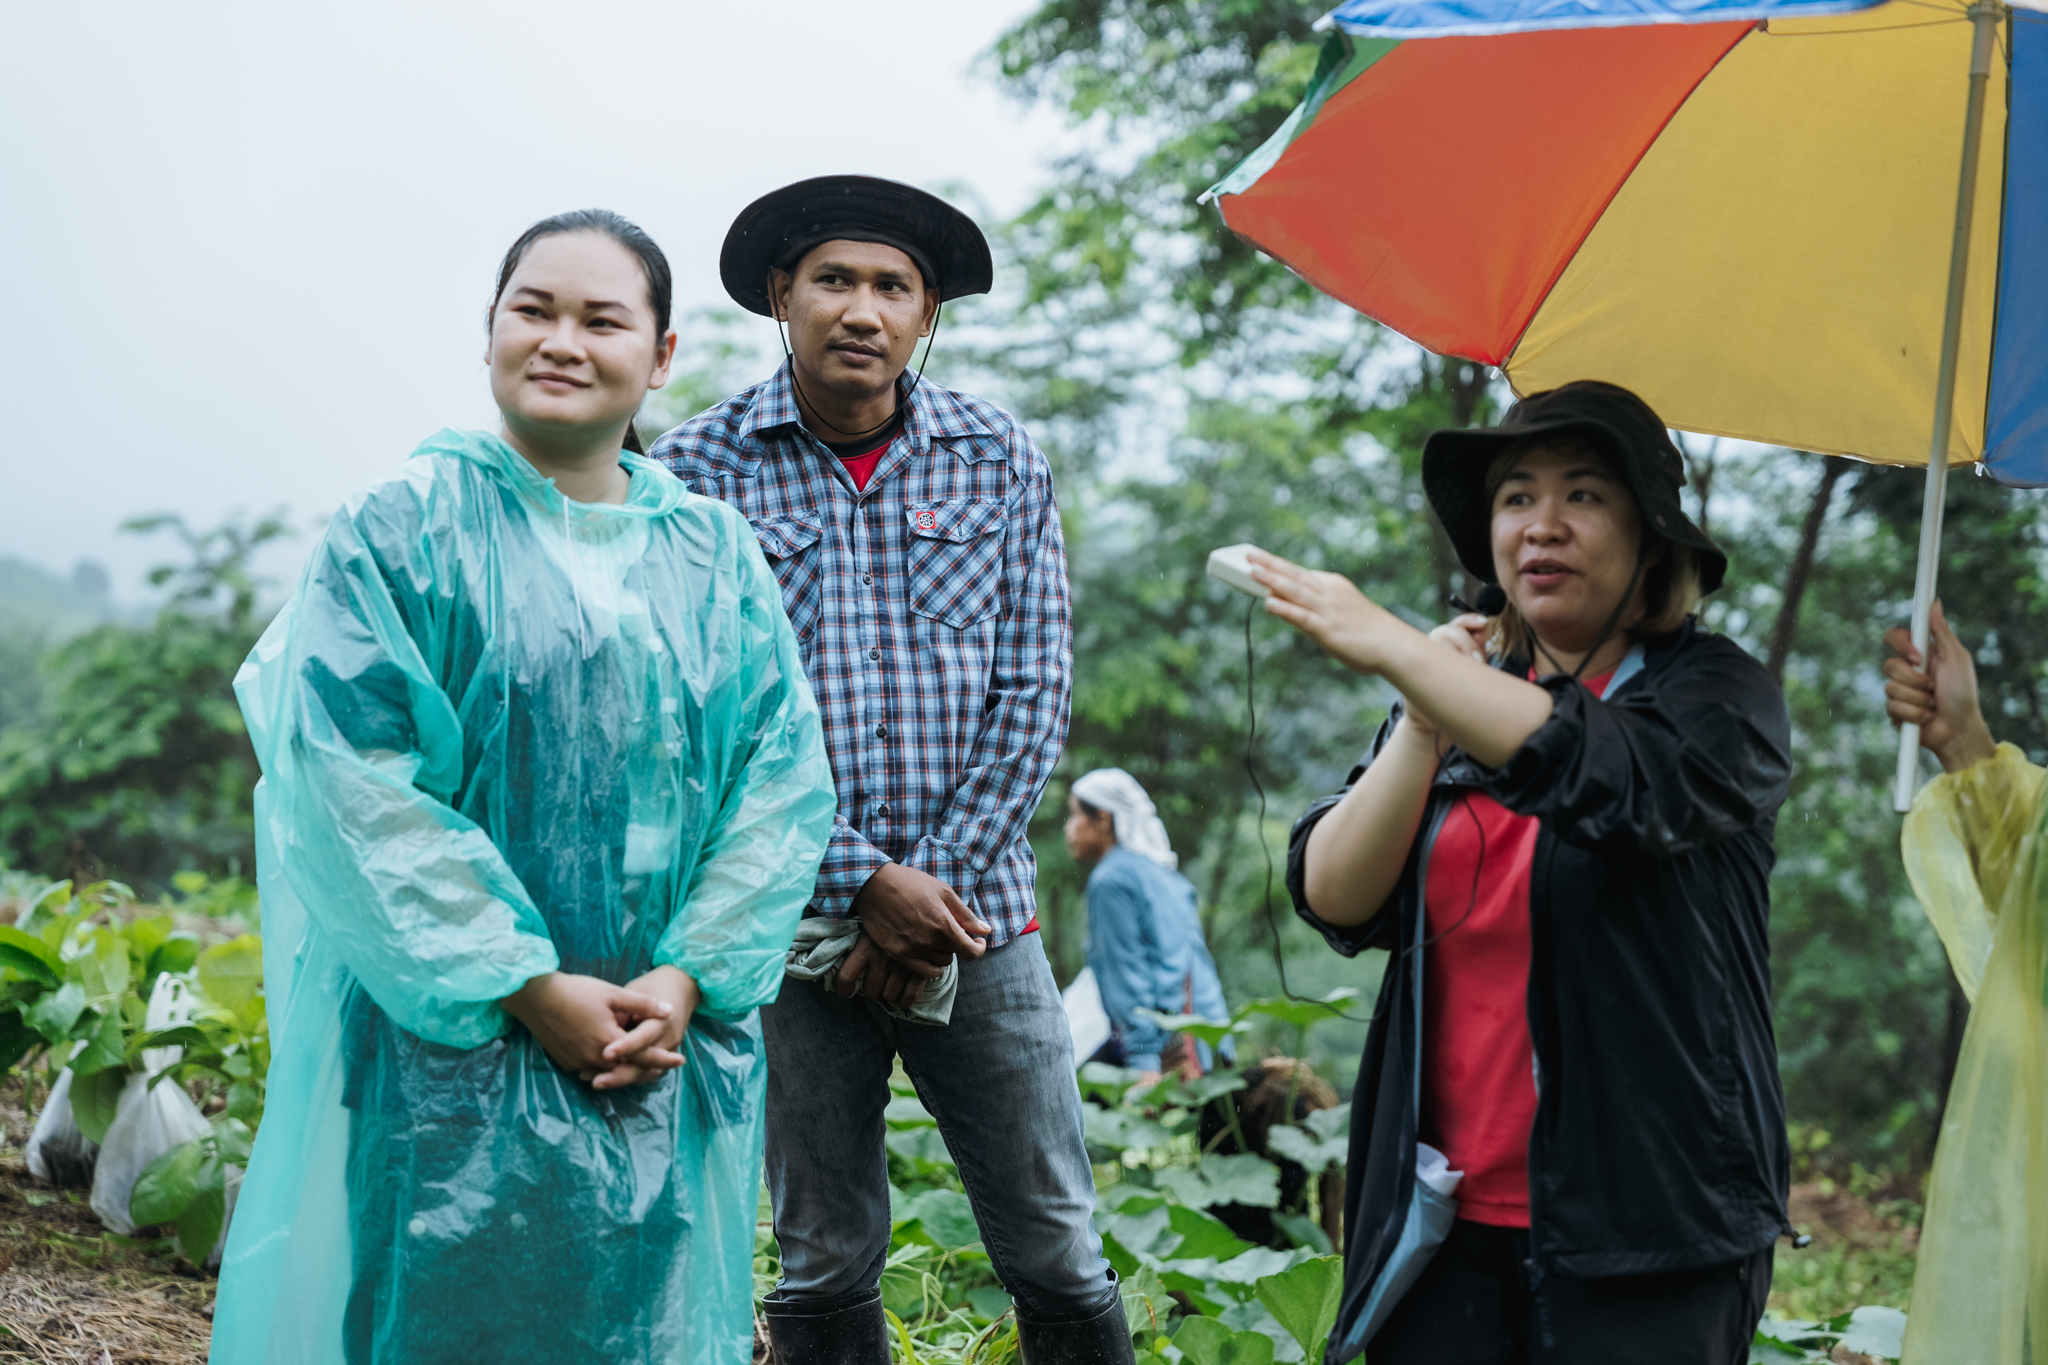 วรารัตน์ วุฒิ และอาภาภรณ์ ทองเสงี่ยม ผู้ประสานงานโครงการต้นไม้ของเรา รีคอฟ ประเทศไทย นำทีมเกษตรกรสาธิตการติดตามต้นไม้ในแปลงปลูก